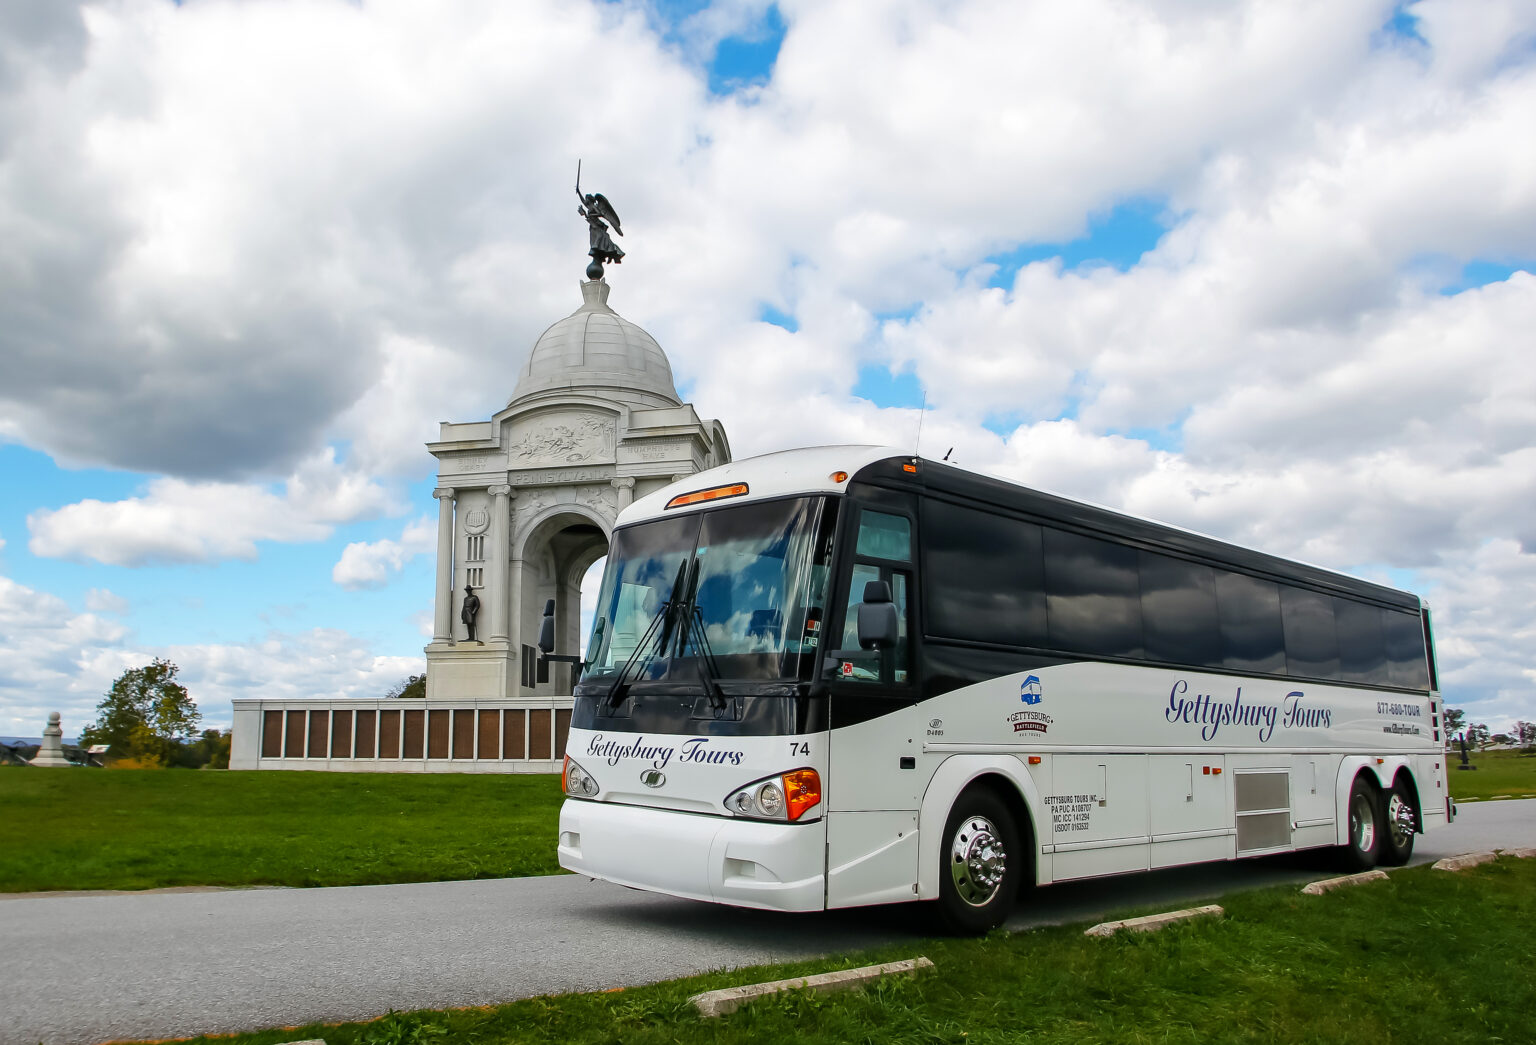 gettysburg battlefield tours bus